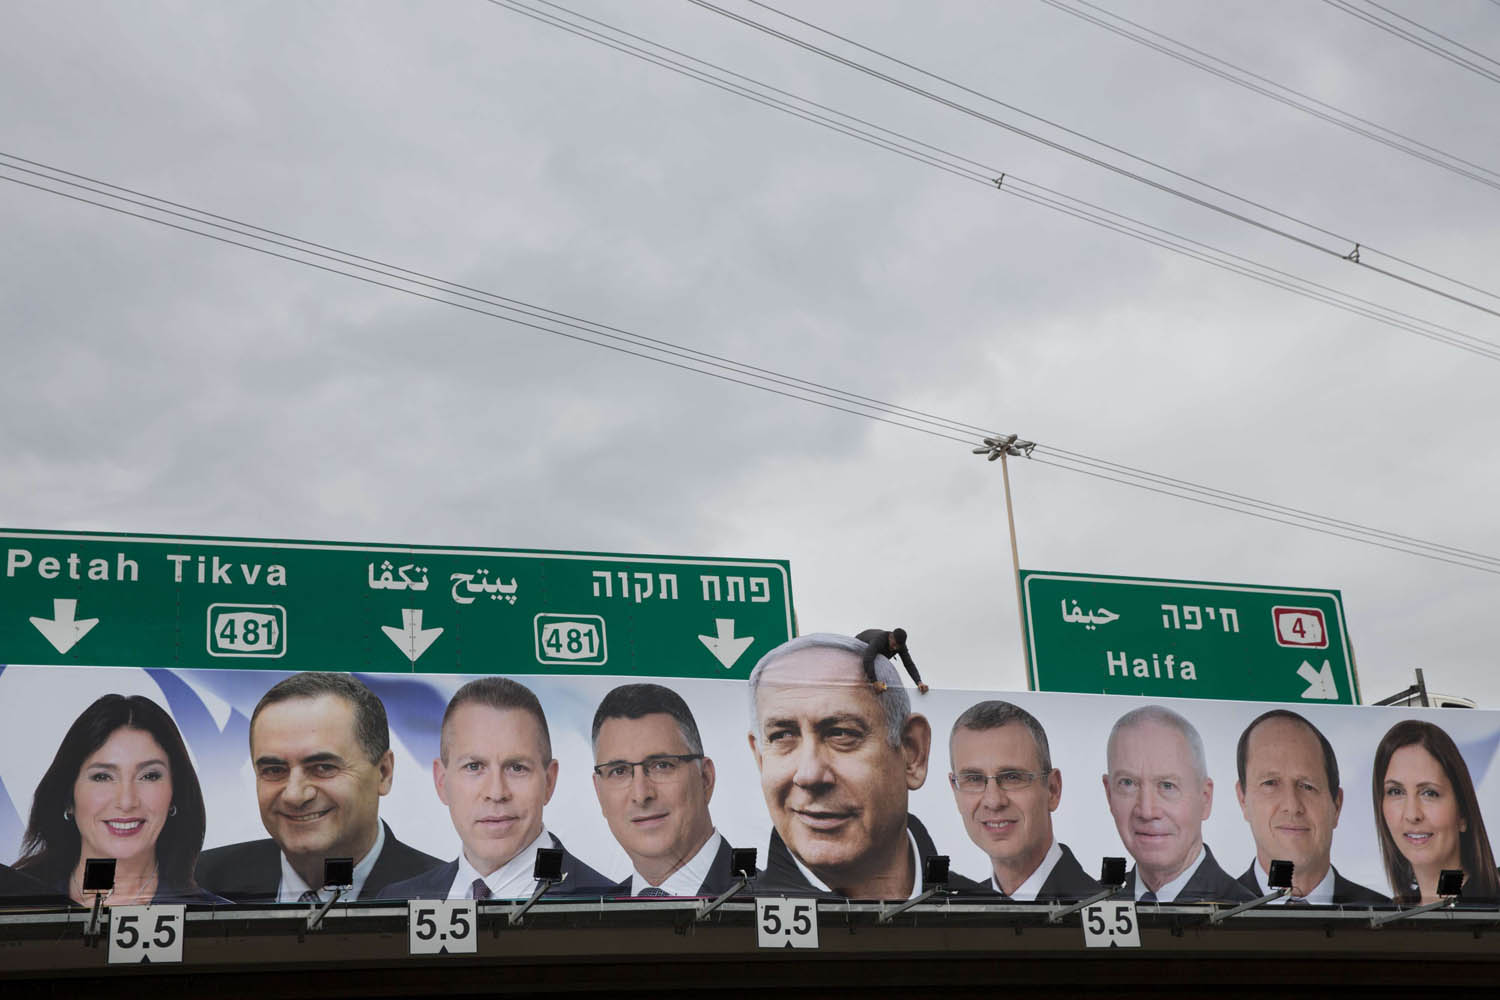 اعلانات انتخابية لرئيس الوزراء الإسرائيلي بنيامين نتنياهو وحزبه